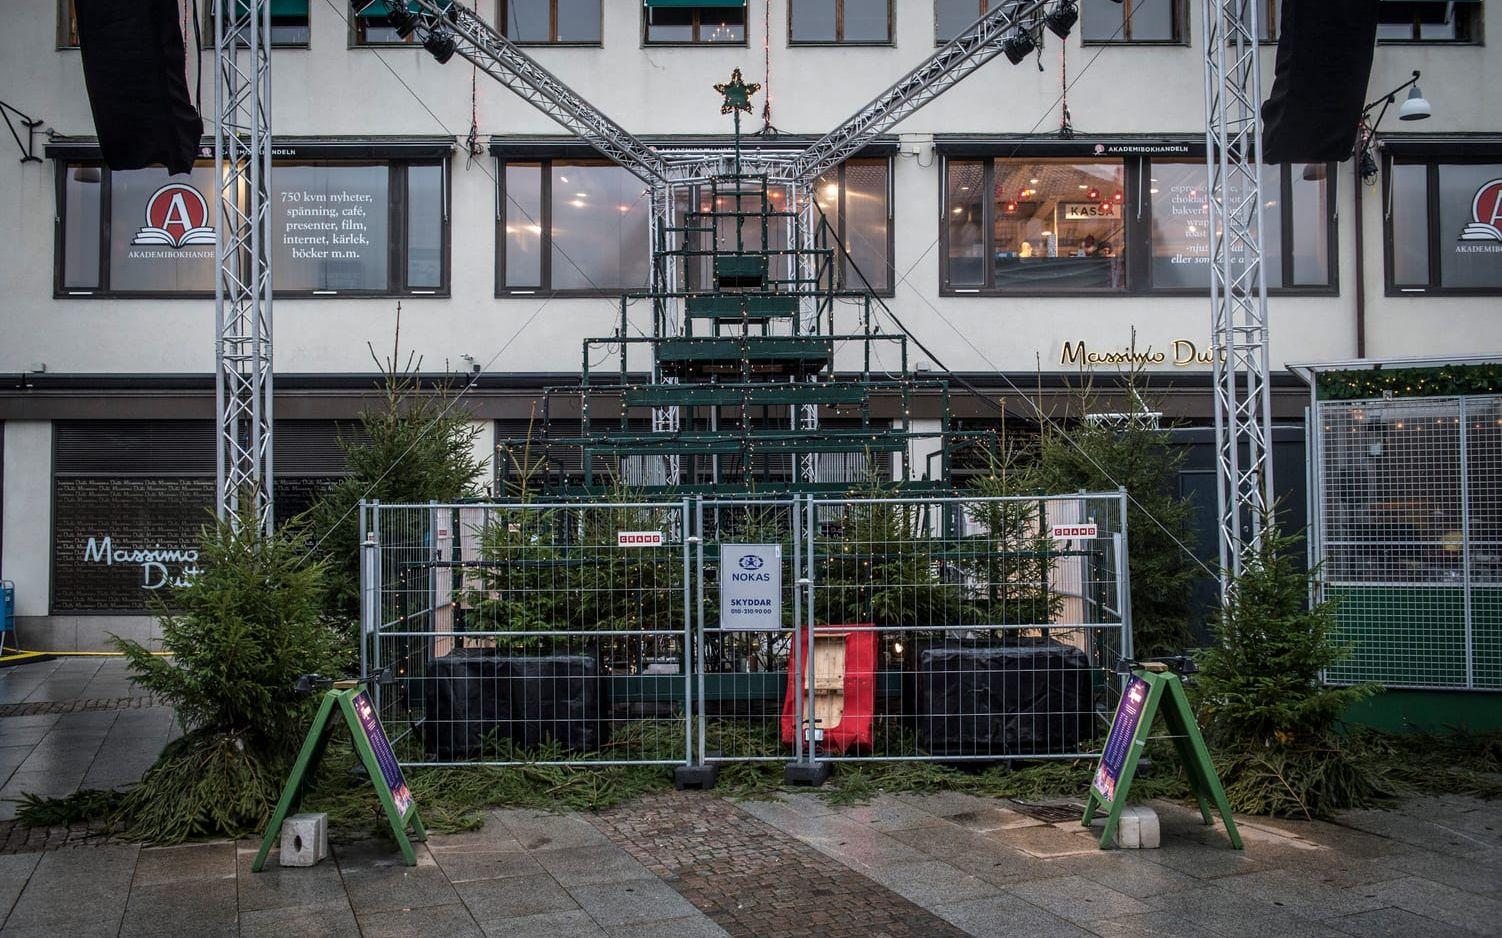 Julstämning eller begravningskänsla? I Göteborg blir det svårt att skilja dem åt i år. Bild: Olof Ohlsson.